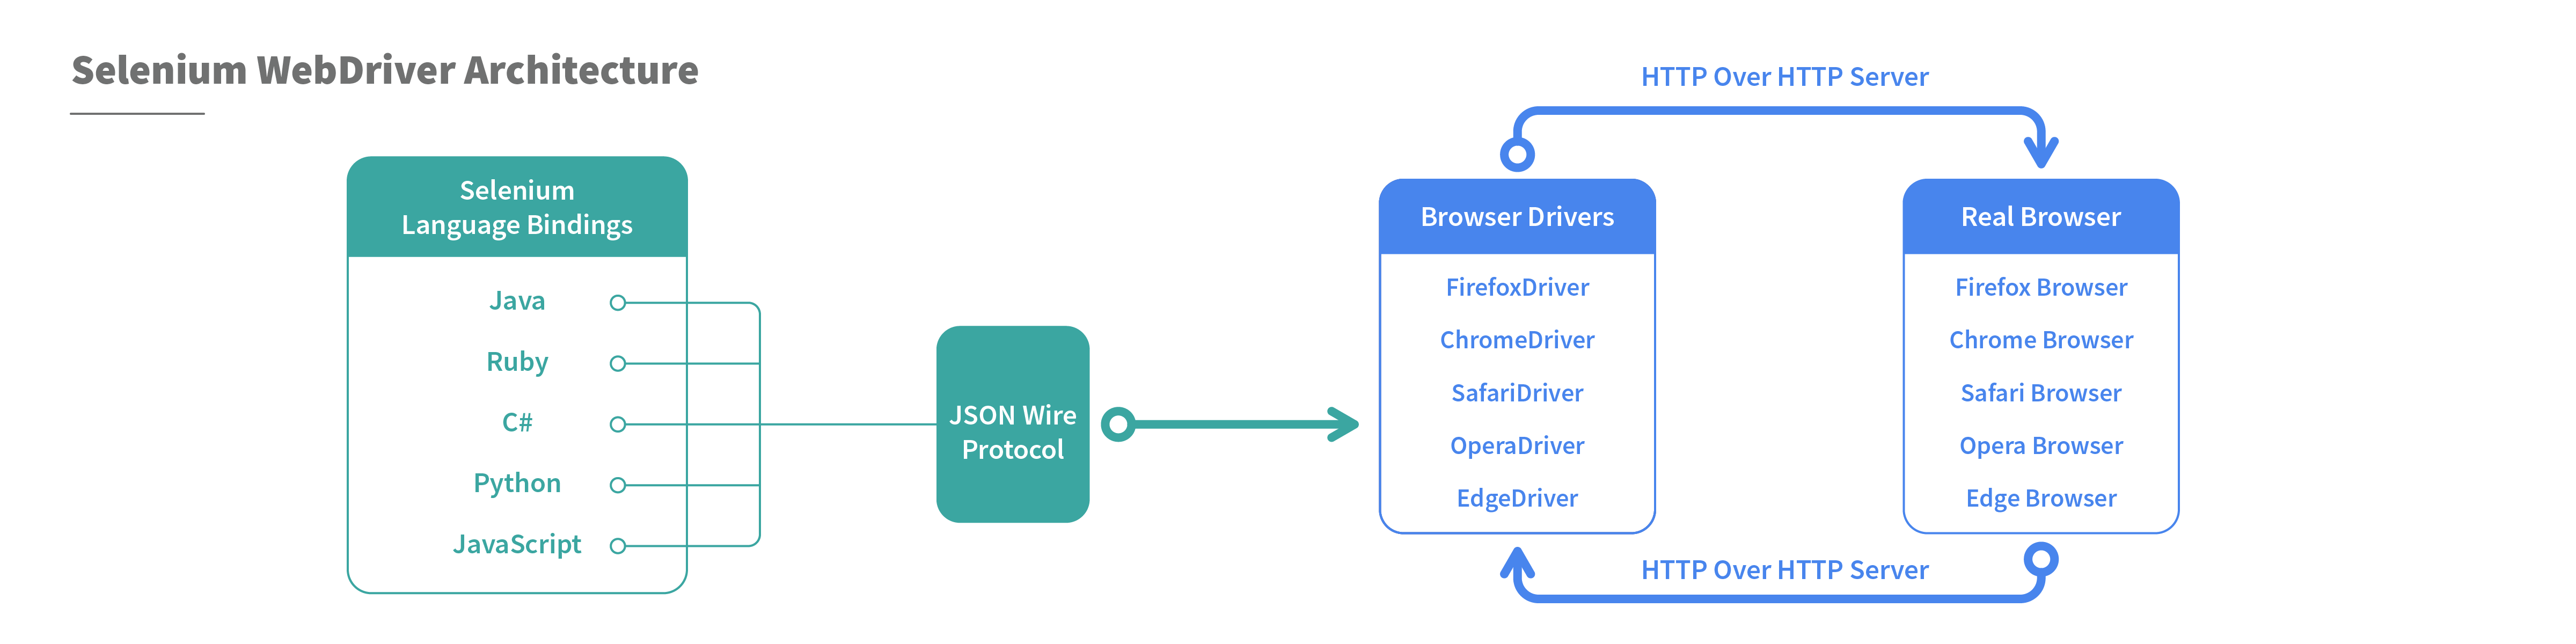 Selenium WebDriver architecture